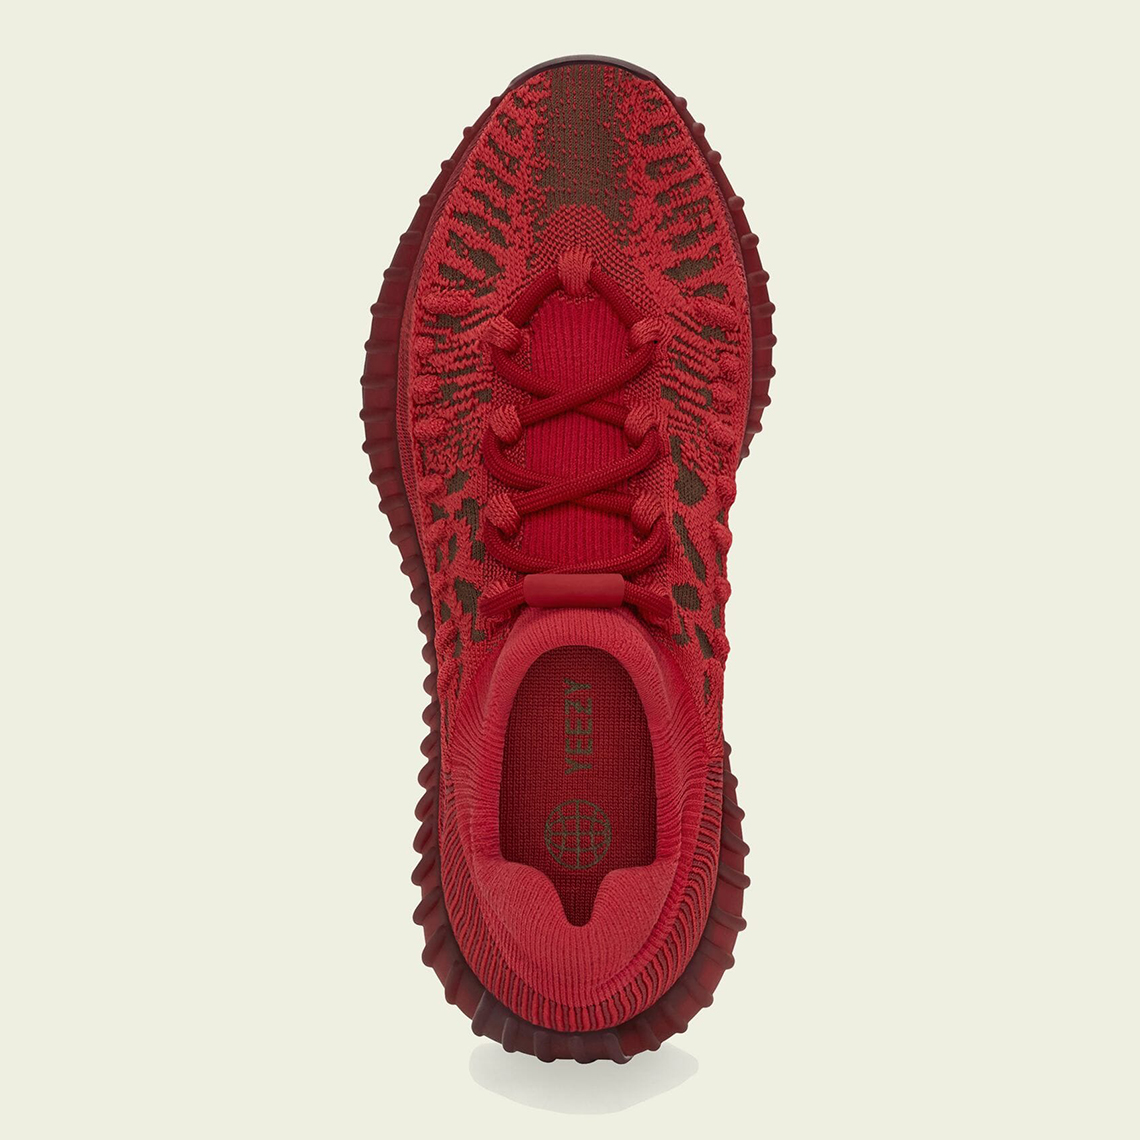 ga zo door Het formulier viool adidas Yeezy Boost 350 v2 CMPCT "Slate Red" GW6945 | SneakerNews.com